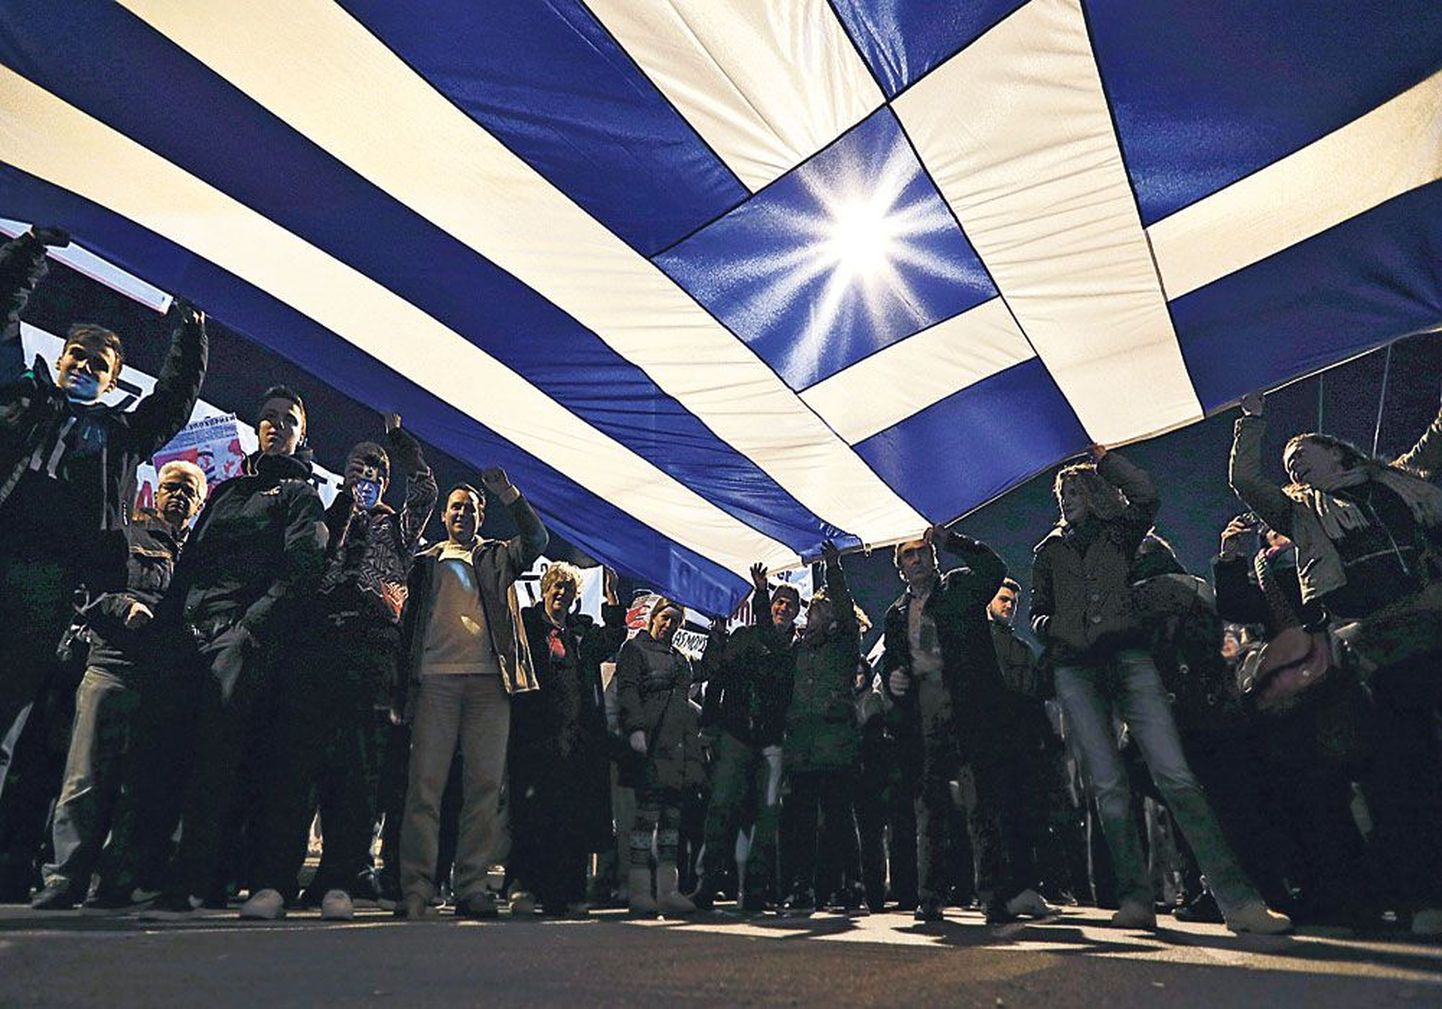 В Афинах прошли акции протеста против программы урезания расходов, люди выражали поддержку позиции правительства. Фото сделано 15 февраля, еще до того, как представленная правительством программа реформ вызвала возмущение у многих греков.